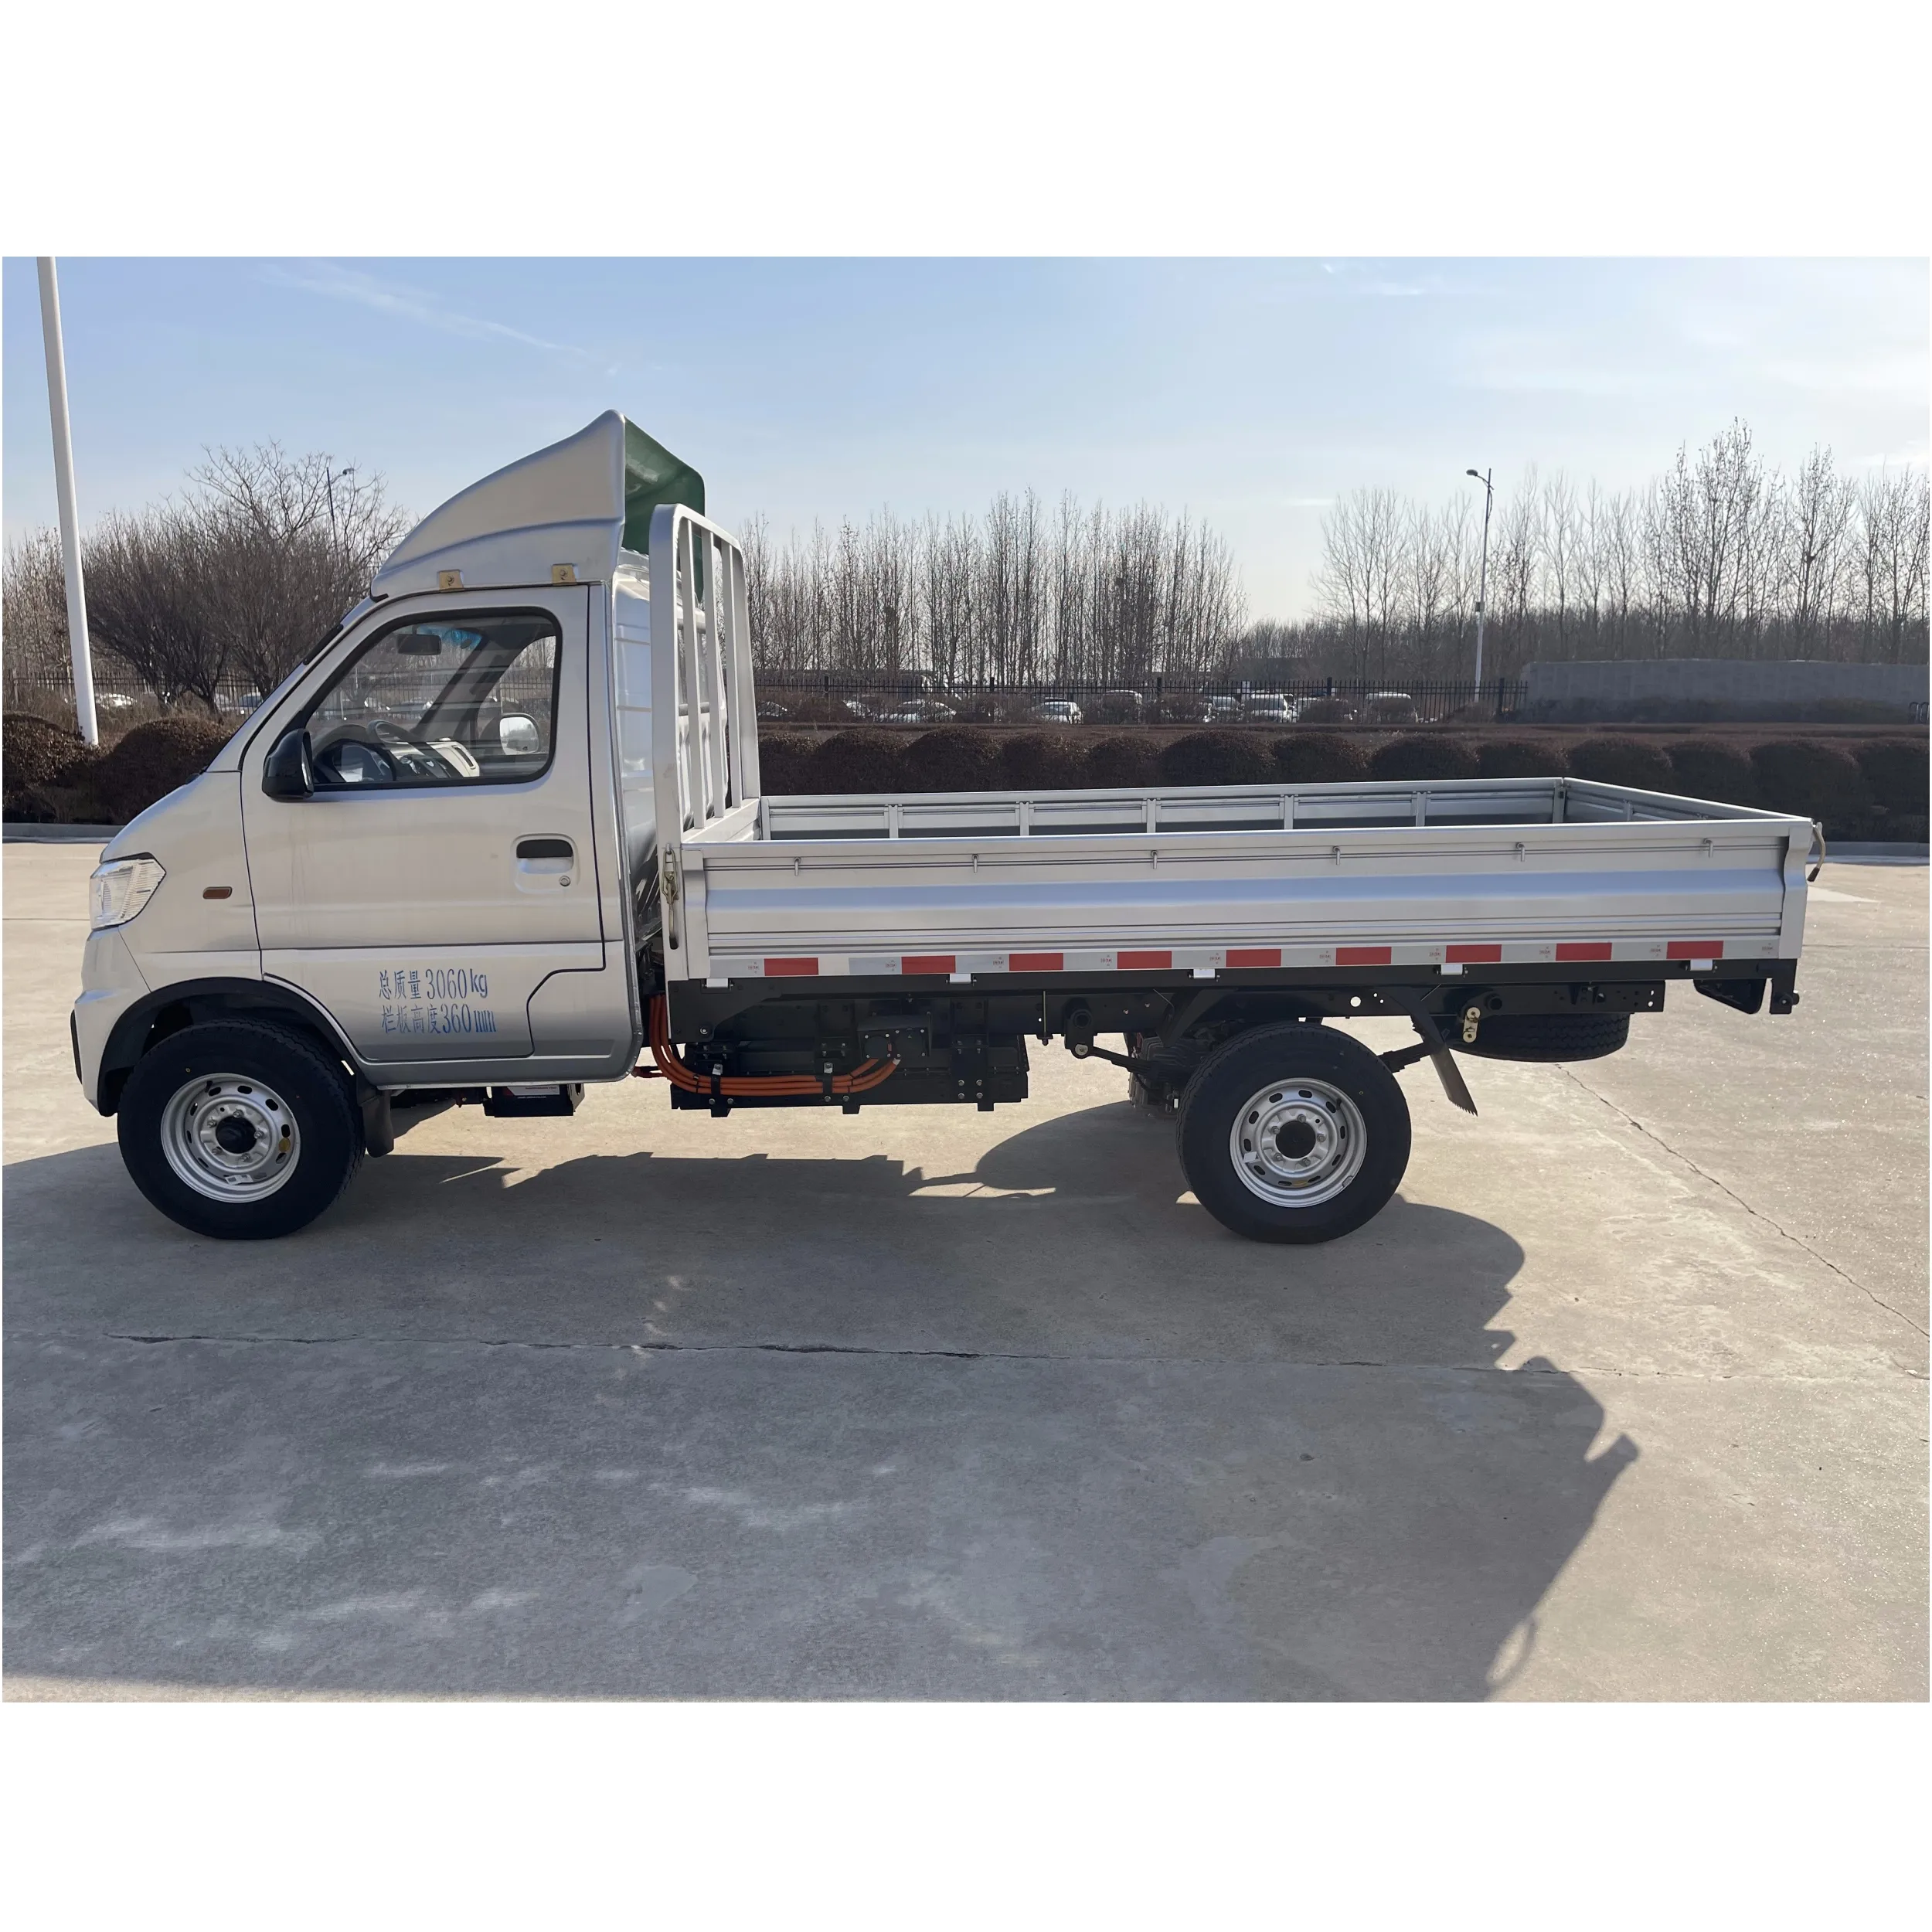 Mini camión eléctrico chino usado de nueva energía SRM T5L 55.7kWh